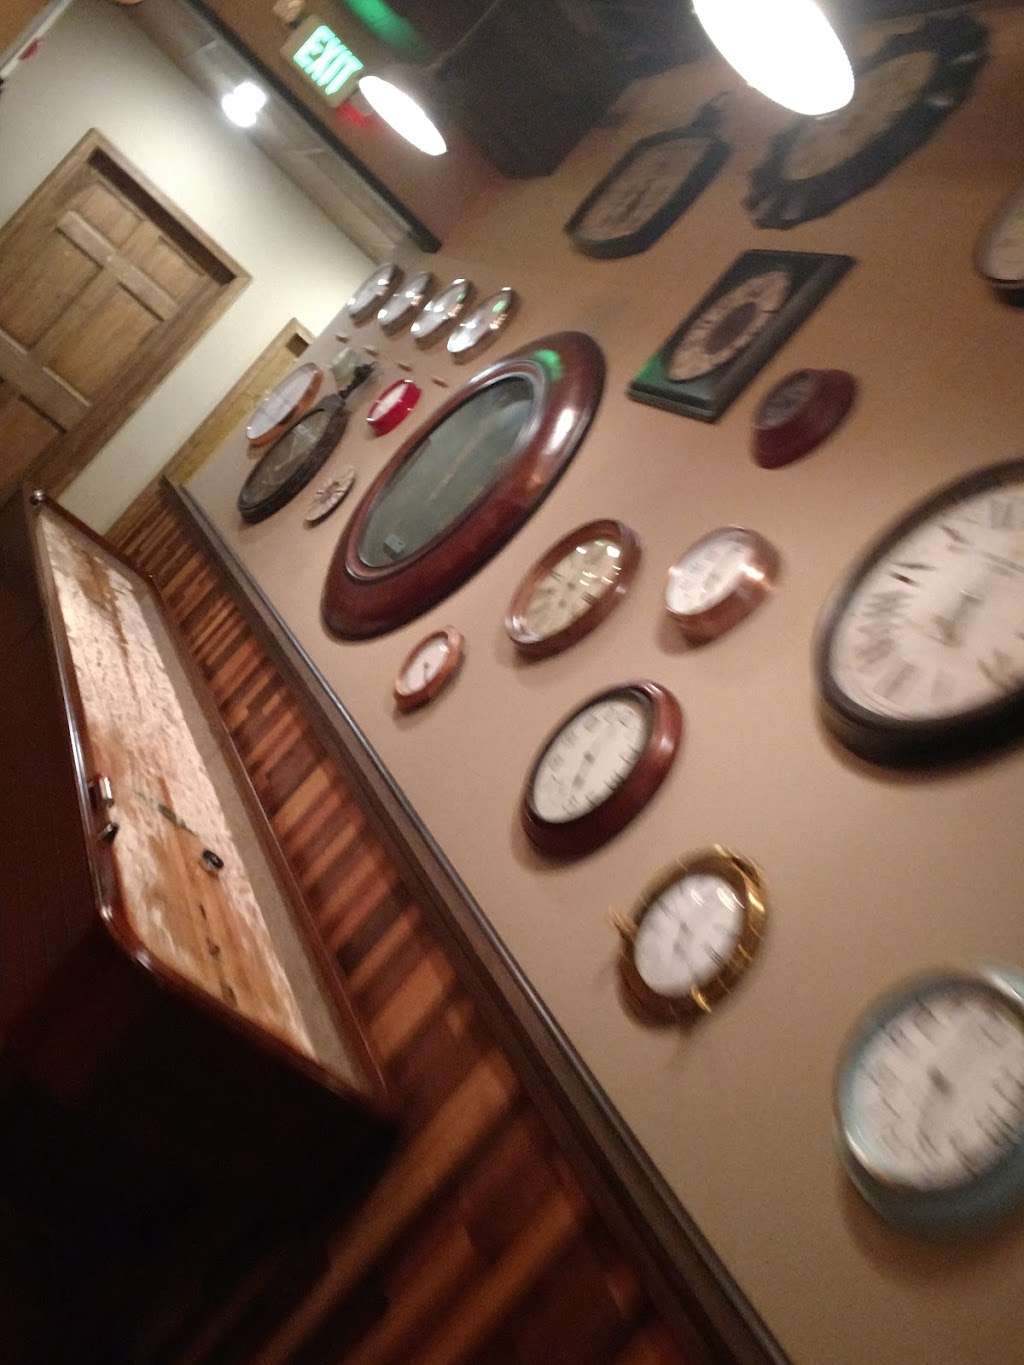 Clock Restoration Bar & Kitchen | F6, 31 S Calvert St, Baltimore, MD 21202 | Phone: (443) 203-1888